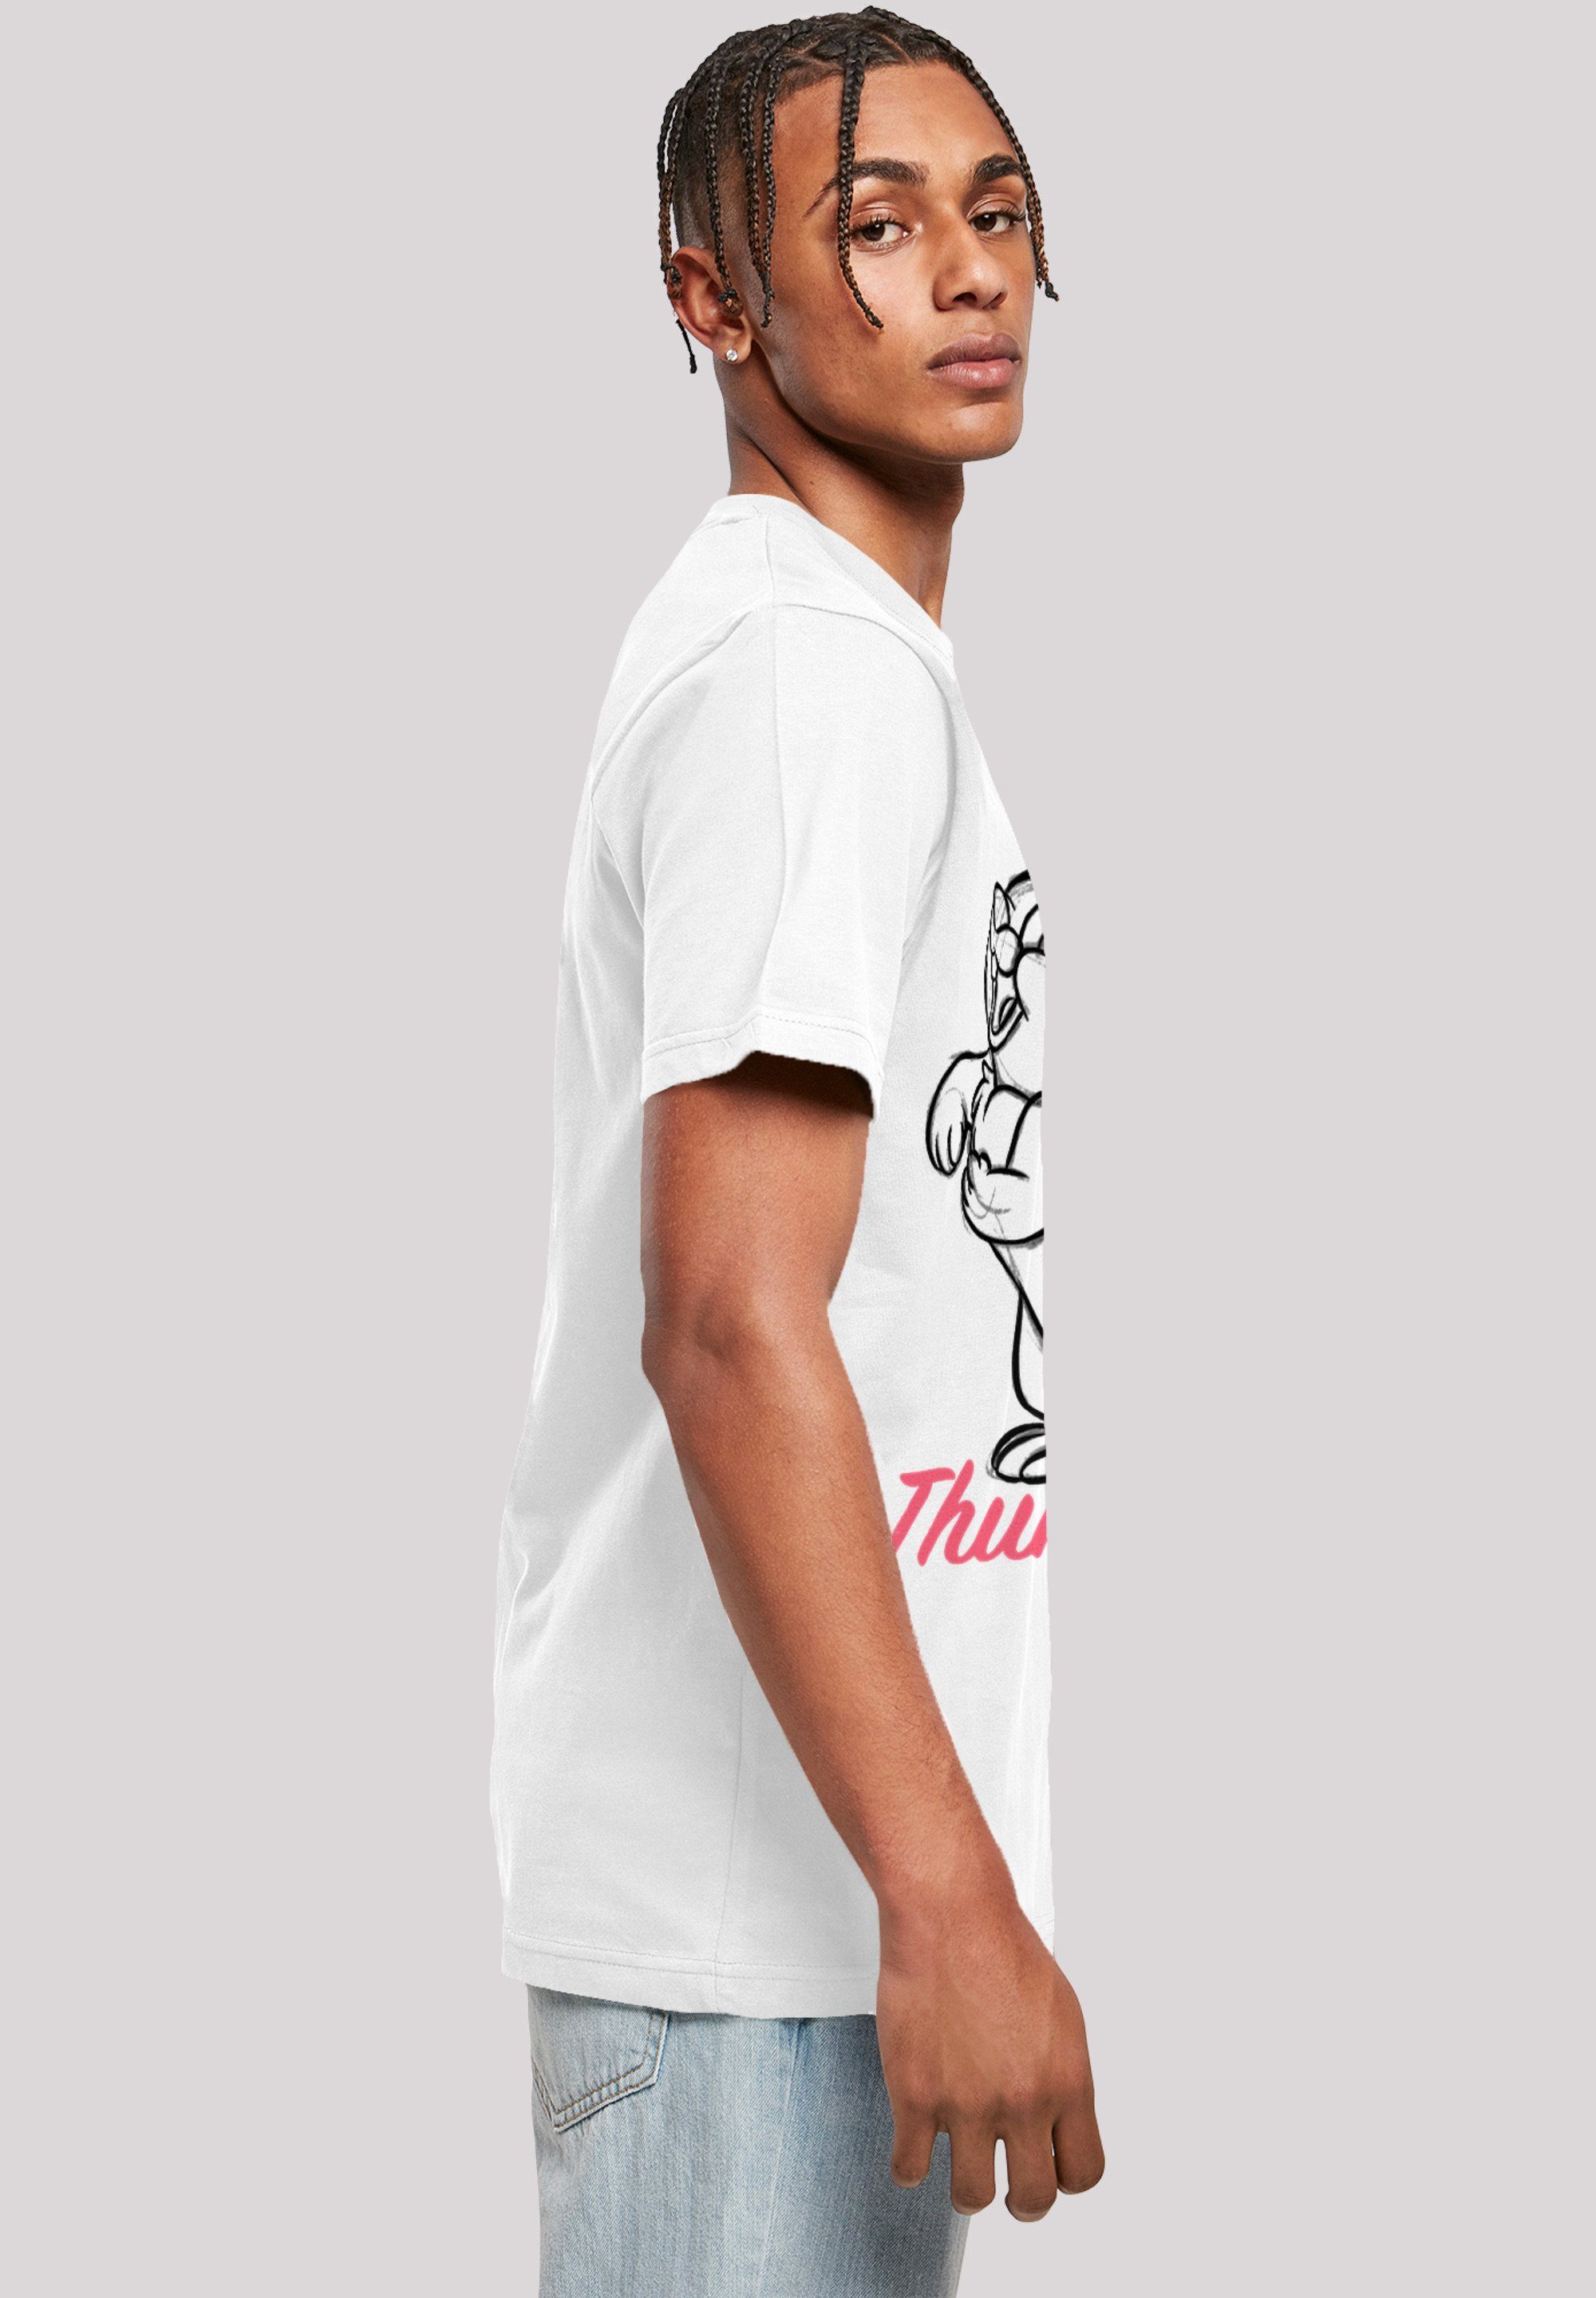 F4NT4STIC T-Shirt Disney Bambi Klopfer Merch,Regular-Fit,Basic,Bedruckt Zeichnung Herren,Premium Line